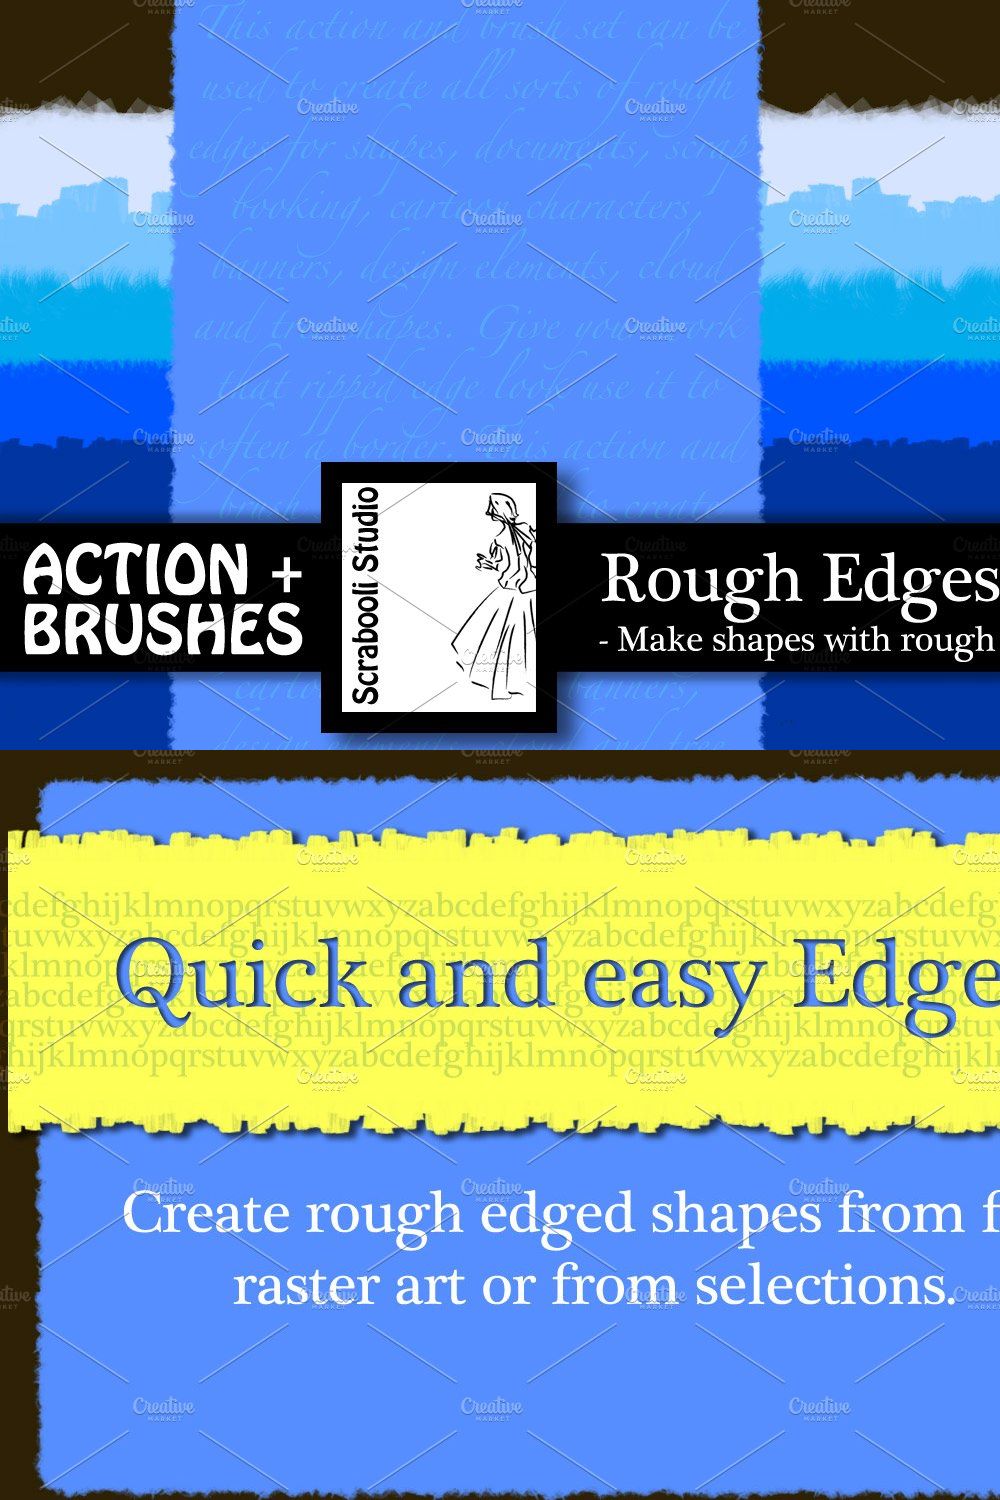 Rough Edges Action pinterest preview image.